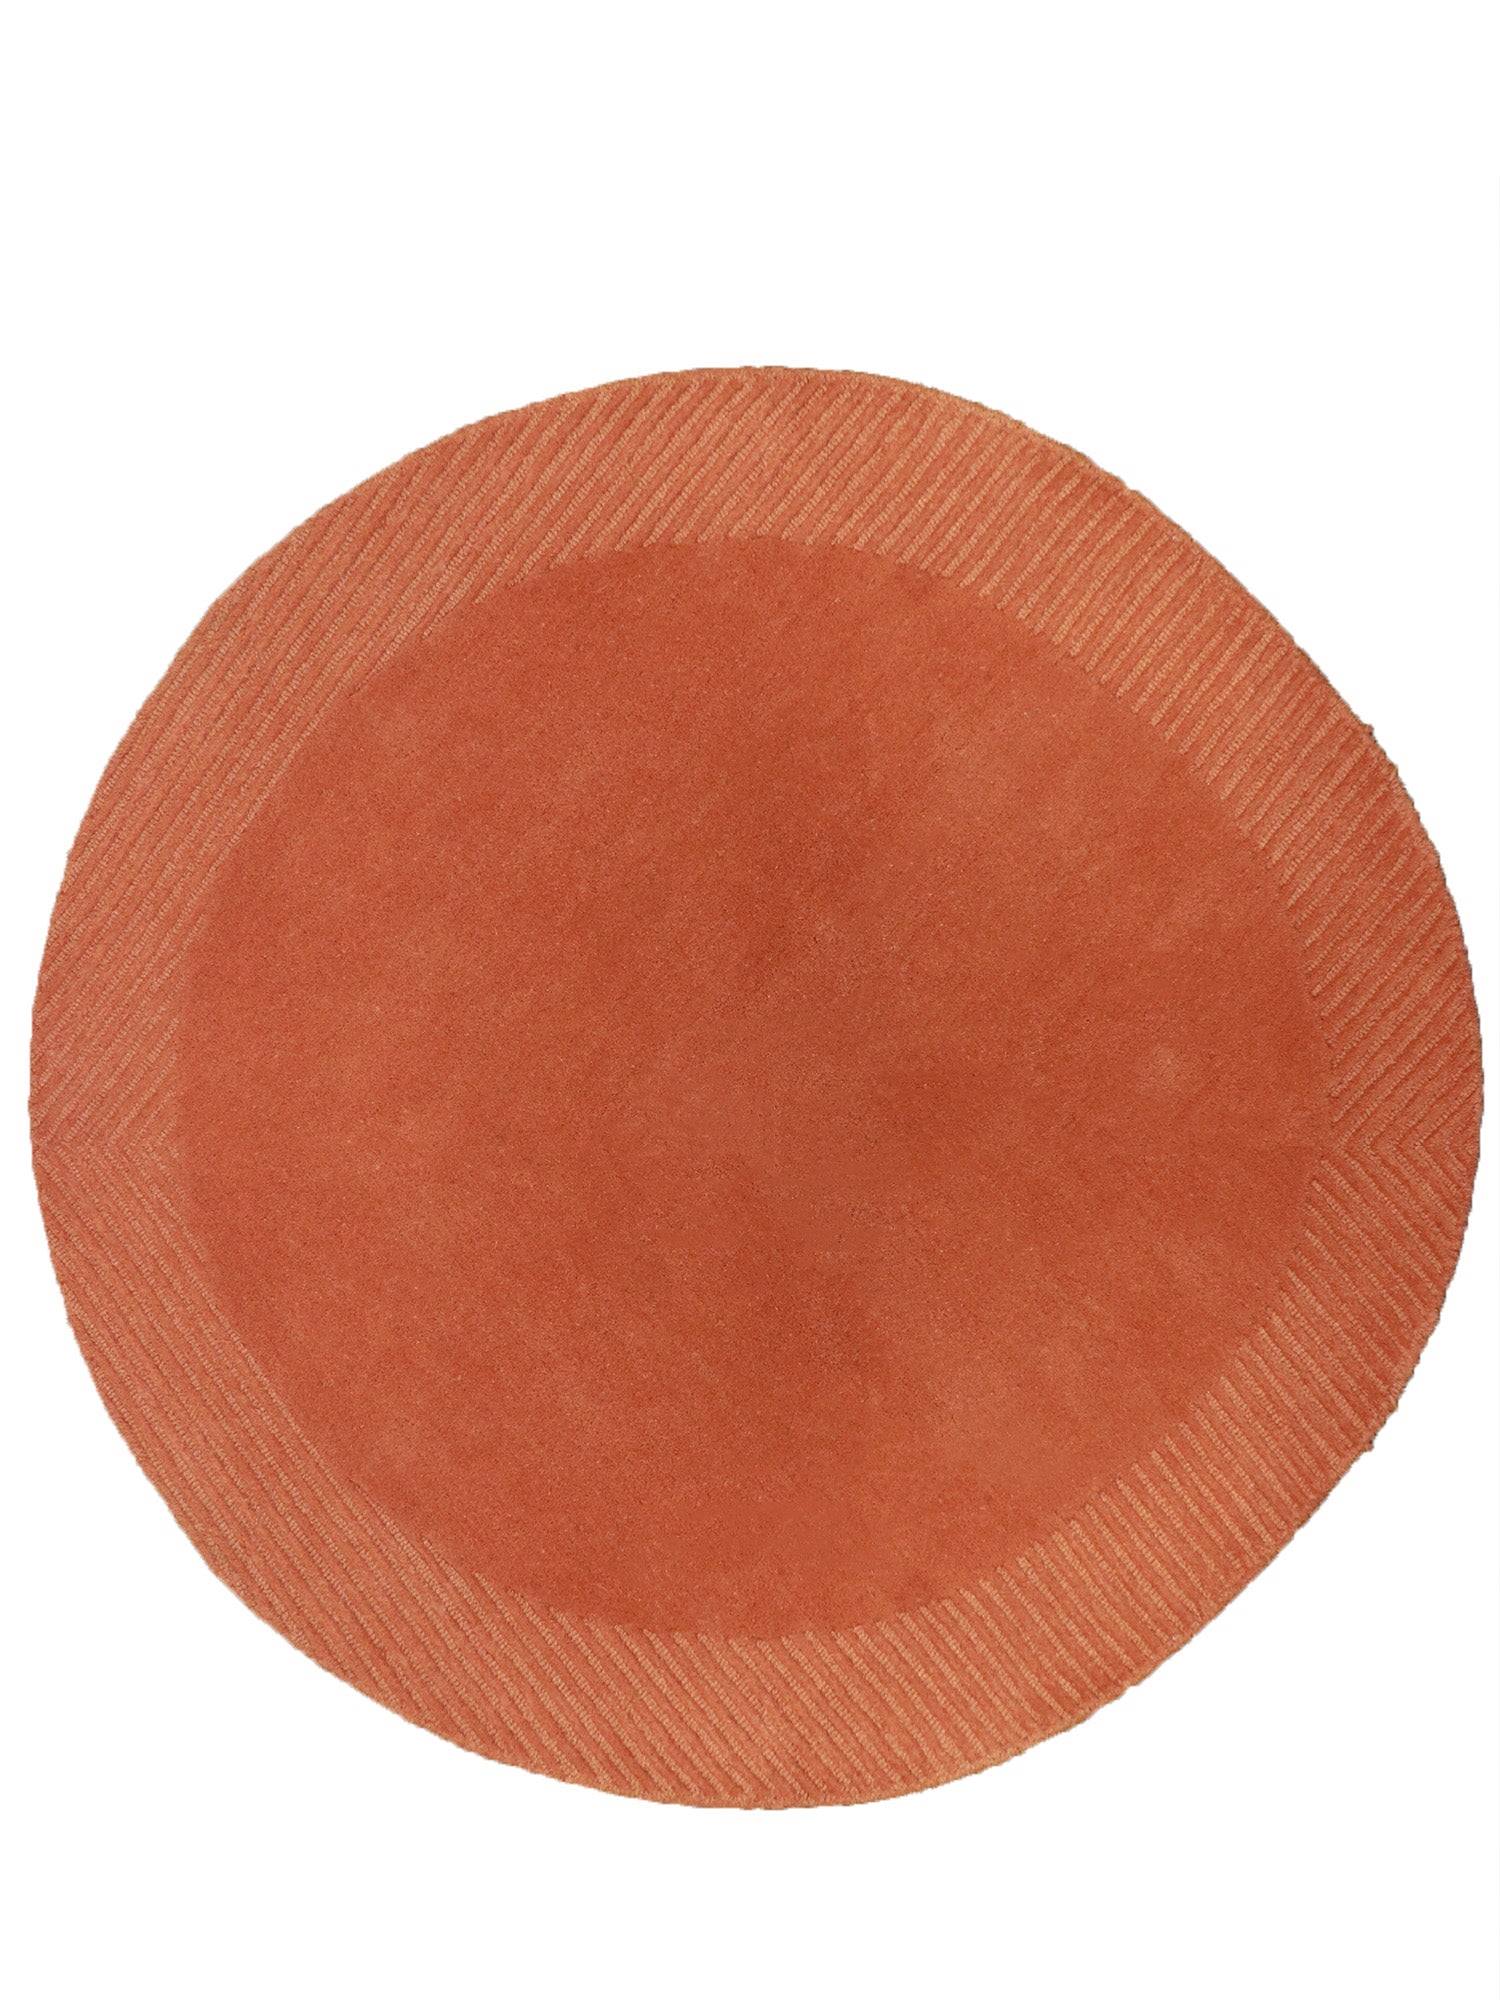 Carpet Hand Tufted 100% Woollen Solid Orange - 5 X 5 Feet